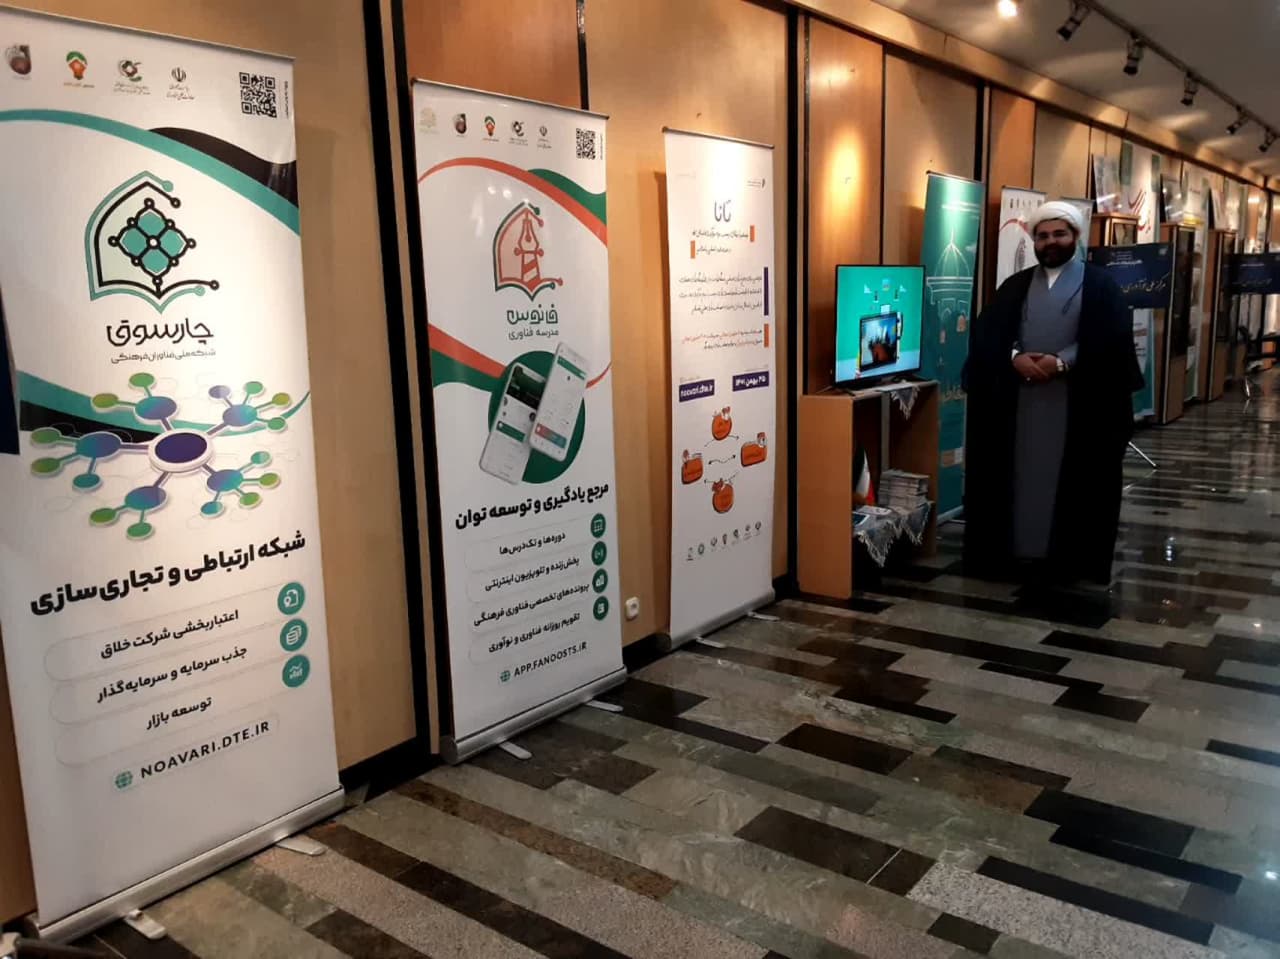 نمایشگاه دفتر تبلیغات در مجلس شورای اسلامی